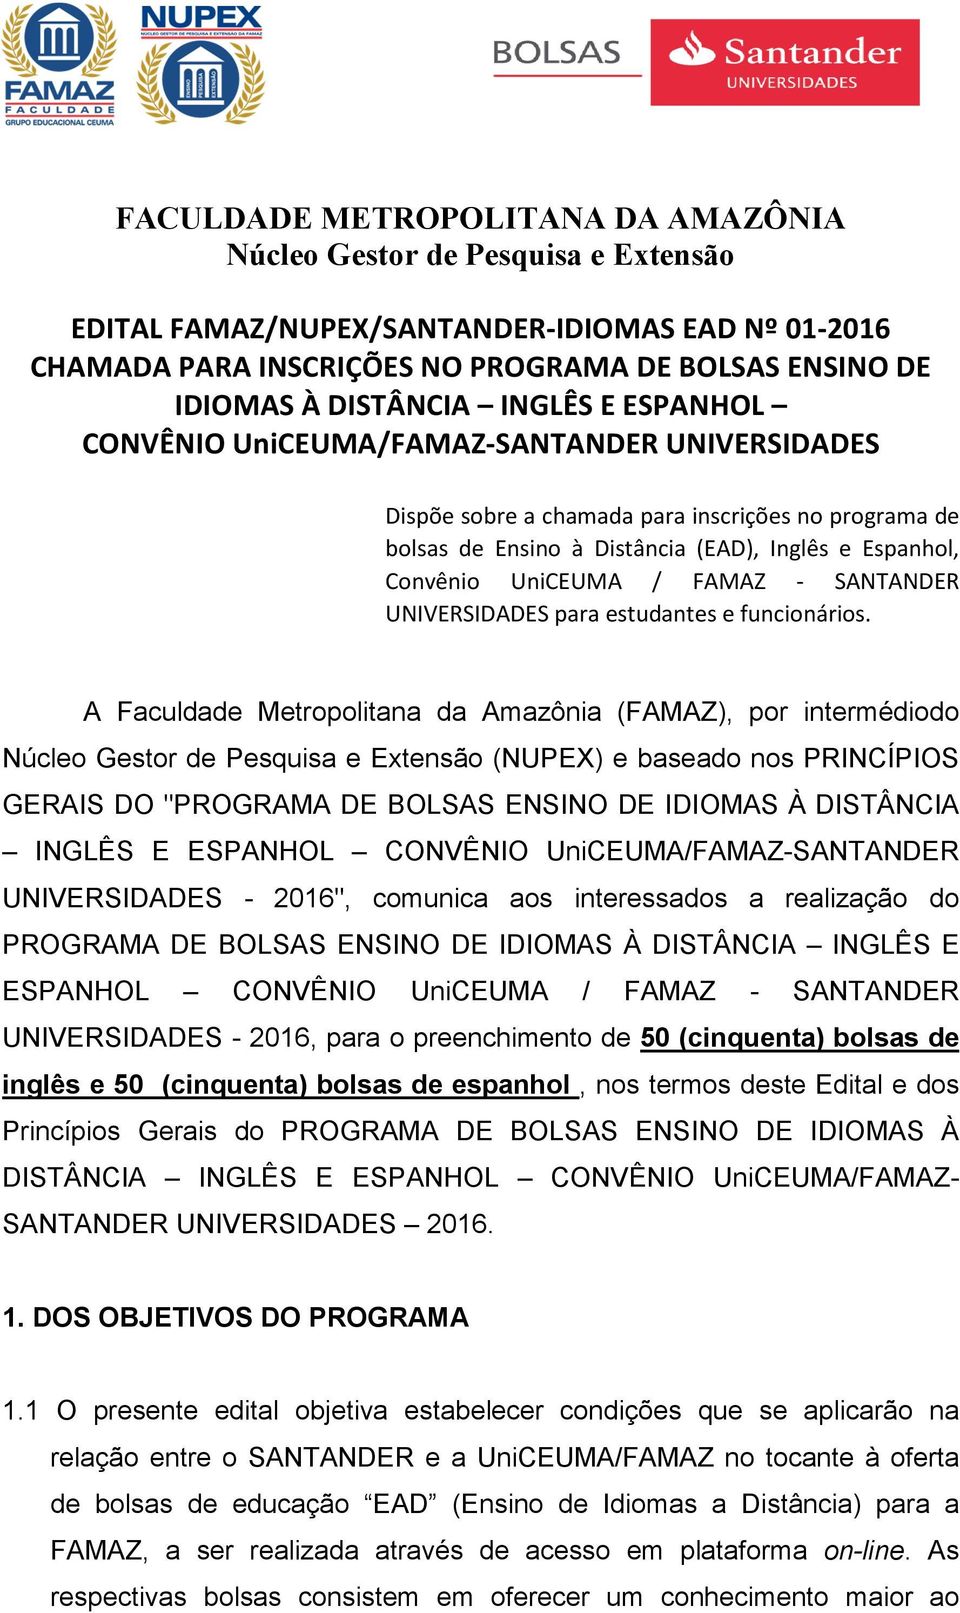 A Faculdade Metropolitana da Amazônia (FAMAZ), por intermédiodo (NUPEX) e baseado nos PRINCÍPIOS GERAIS DO "PROGRAMA DE BOLSAS ENSINO DE IDIOMAS À DISTÂNCIA INGLÊS E ESPANHOL CONVÊNIO